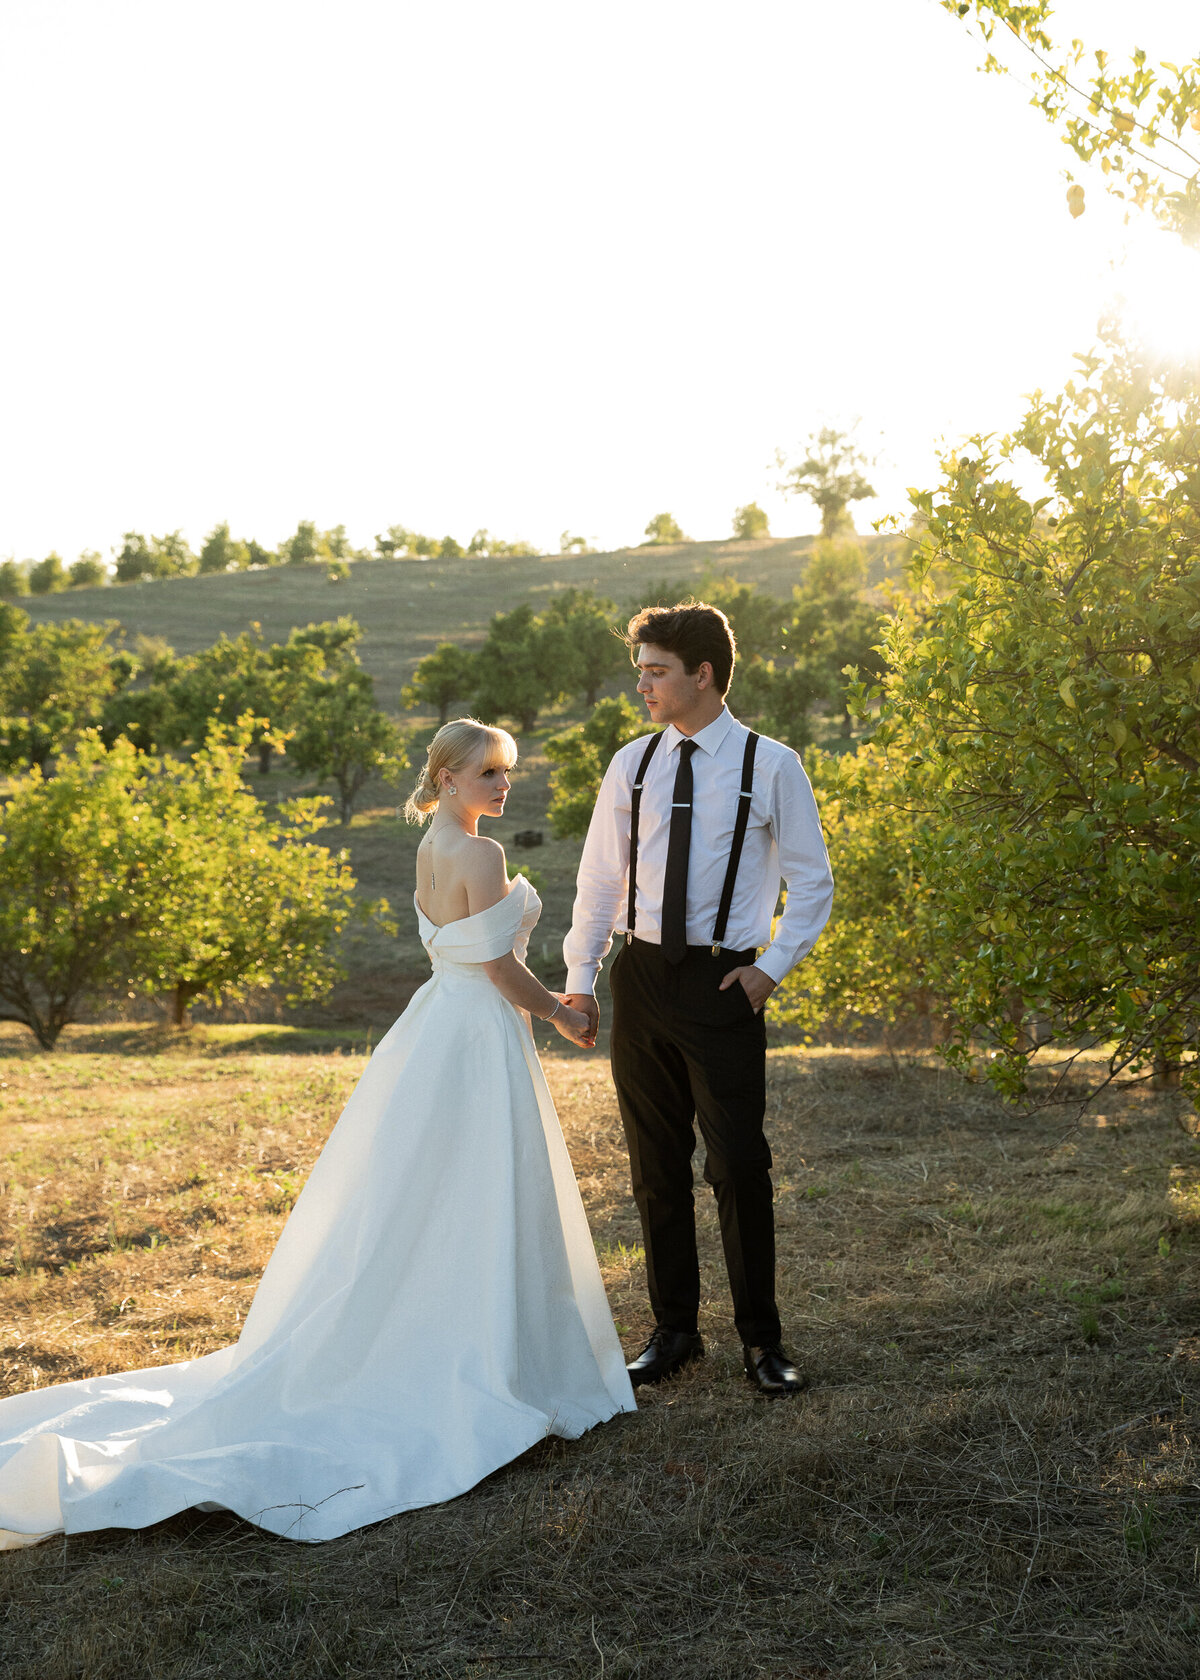 72 Sarah + Elijah Italy wedding | south of indigo photography_